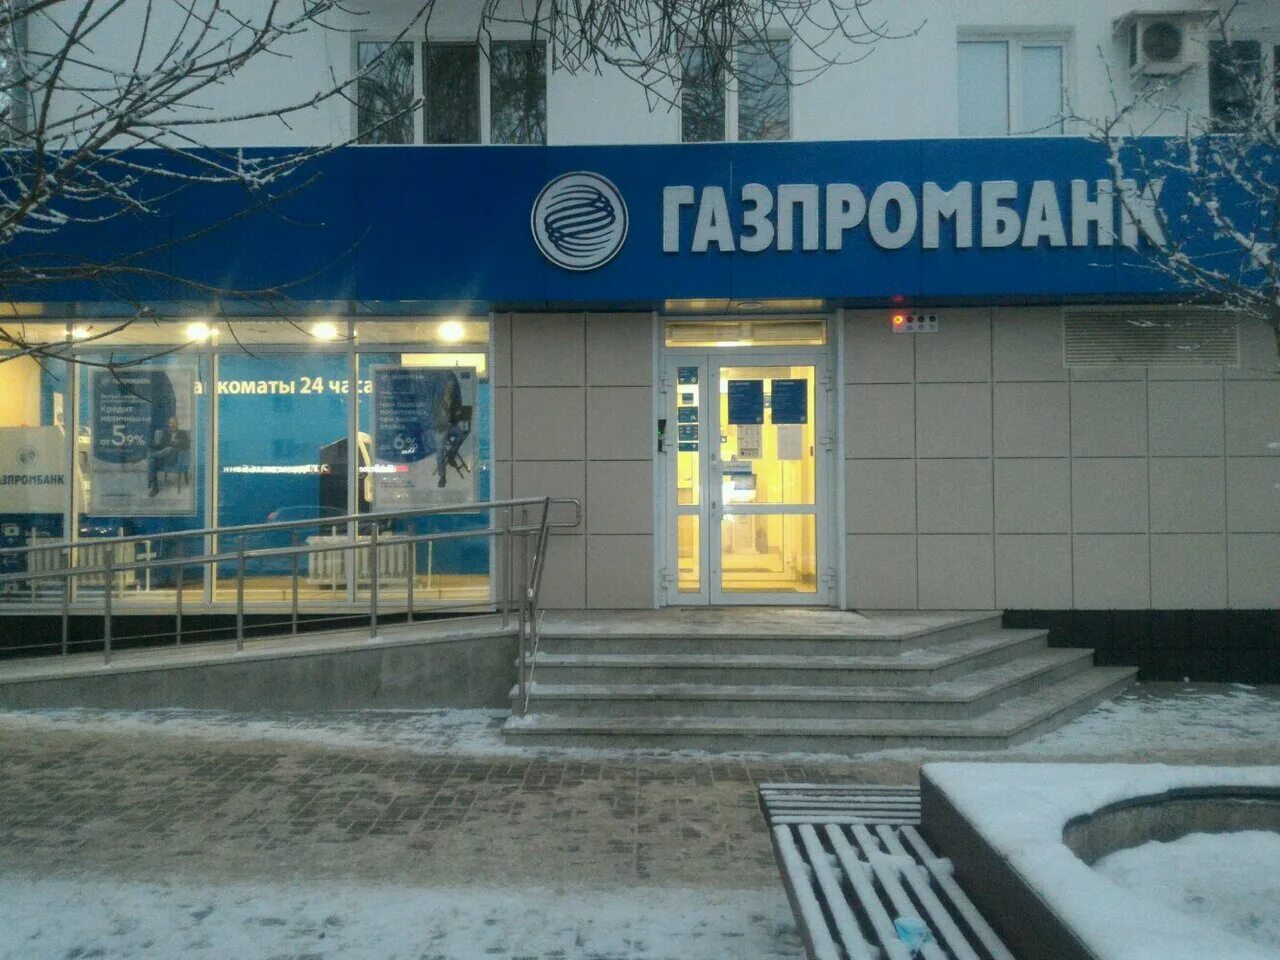 Газпромбанк краснотурьинск. Газпромбанк. Башпромбанк. Банк Газпромбанк. Газпромбанк банкоматы.